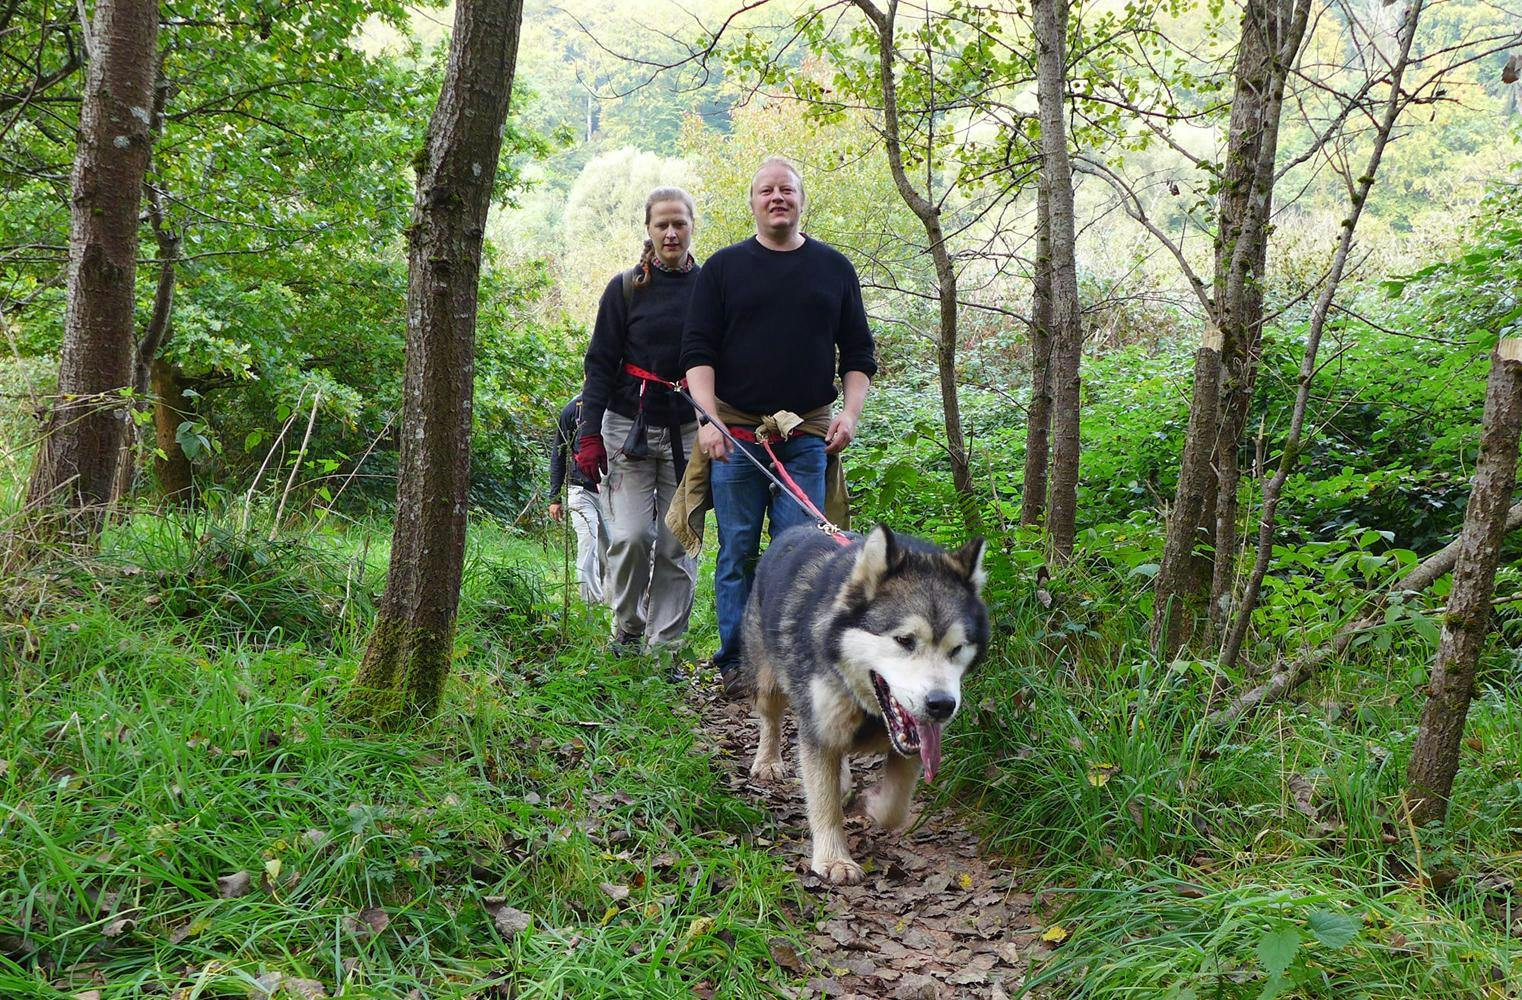 Husky Wanderung | Mensch und Hund als Team im Wald | 4 Std.